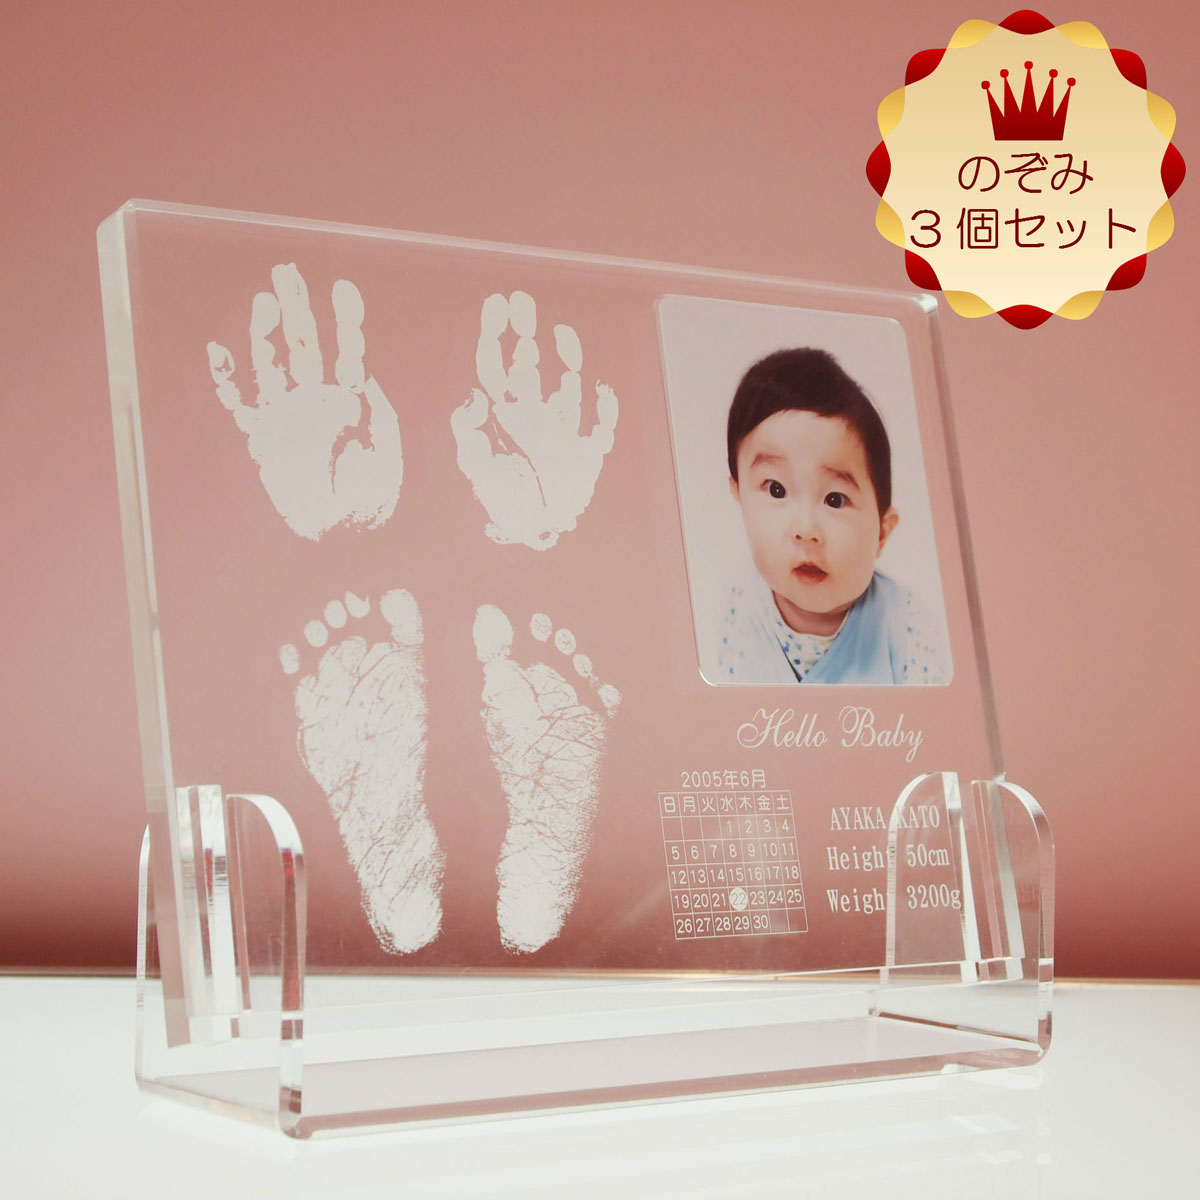 赤ちゃんの両手両足を残せるフォトフレーム3個セット 赤ちゃん 手形 足形 クリスタルトレジャー メモリアル フォトフレーム 世界に一つ ベビー